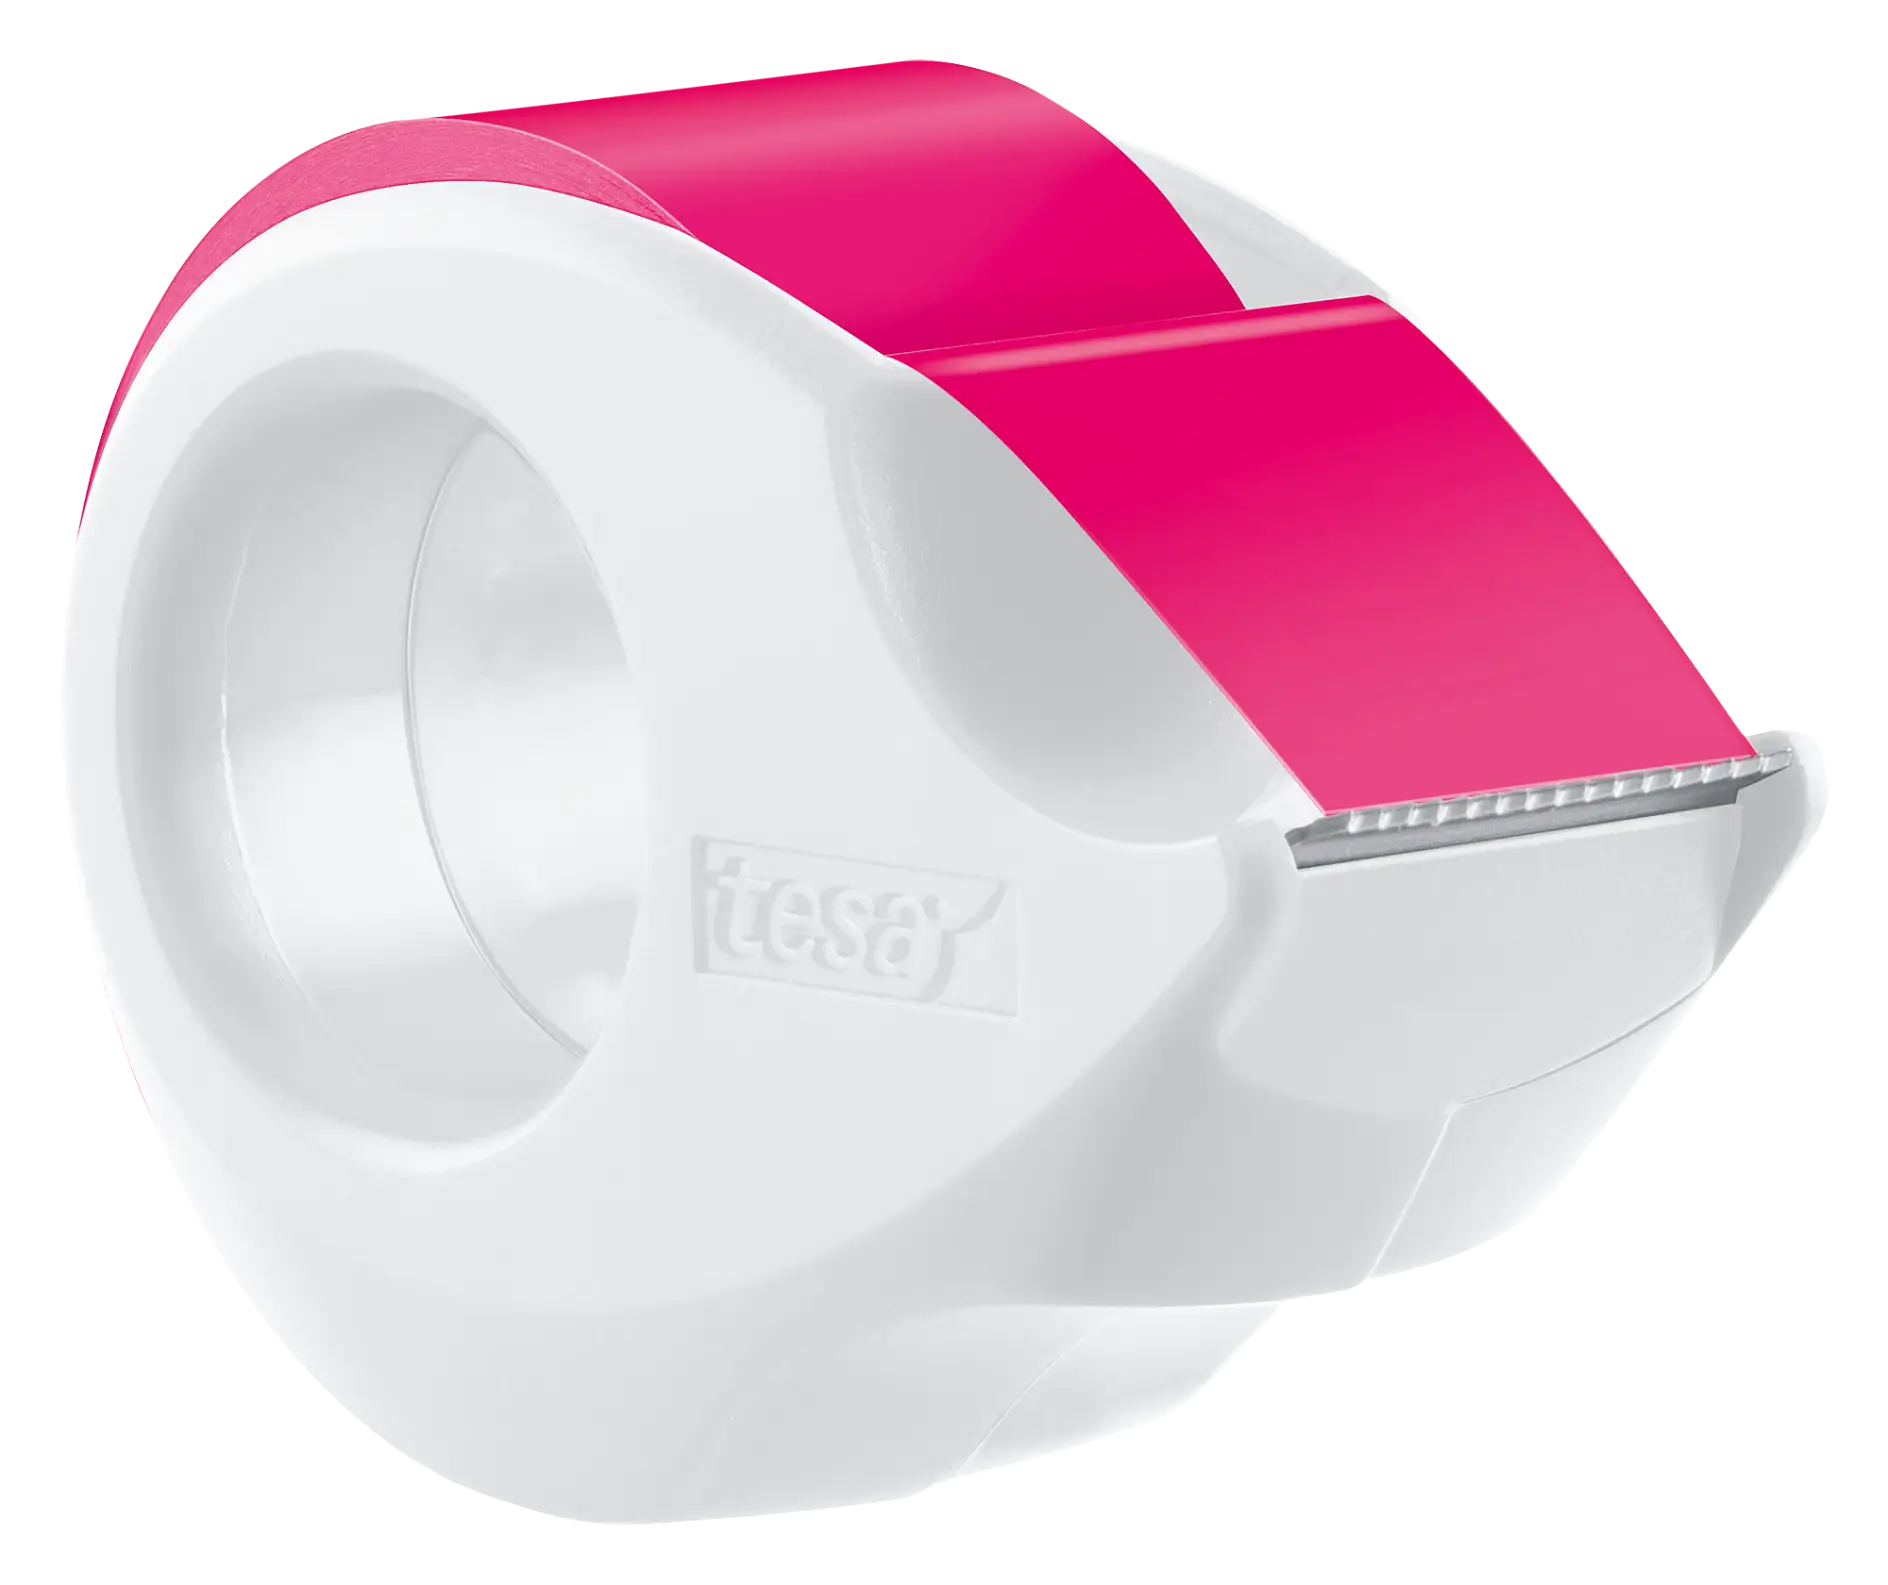 tesafilm Neon 10m x 19mm, pink + Mini Dispenser white